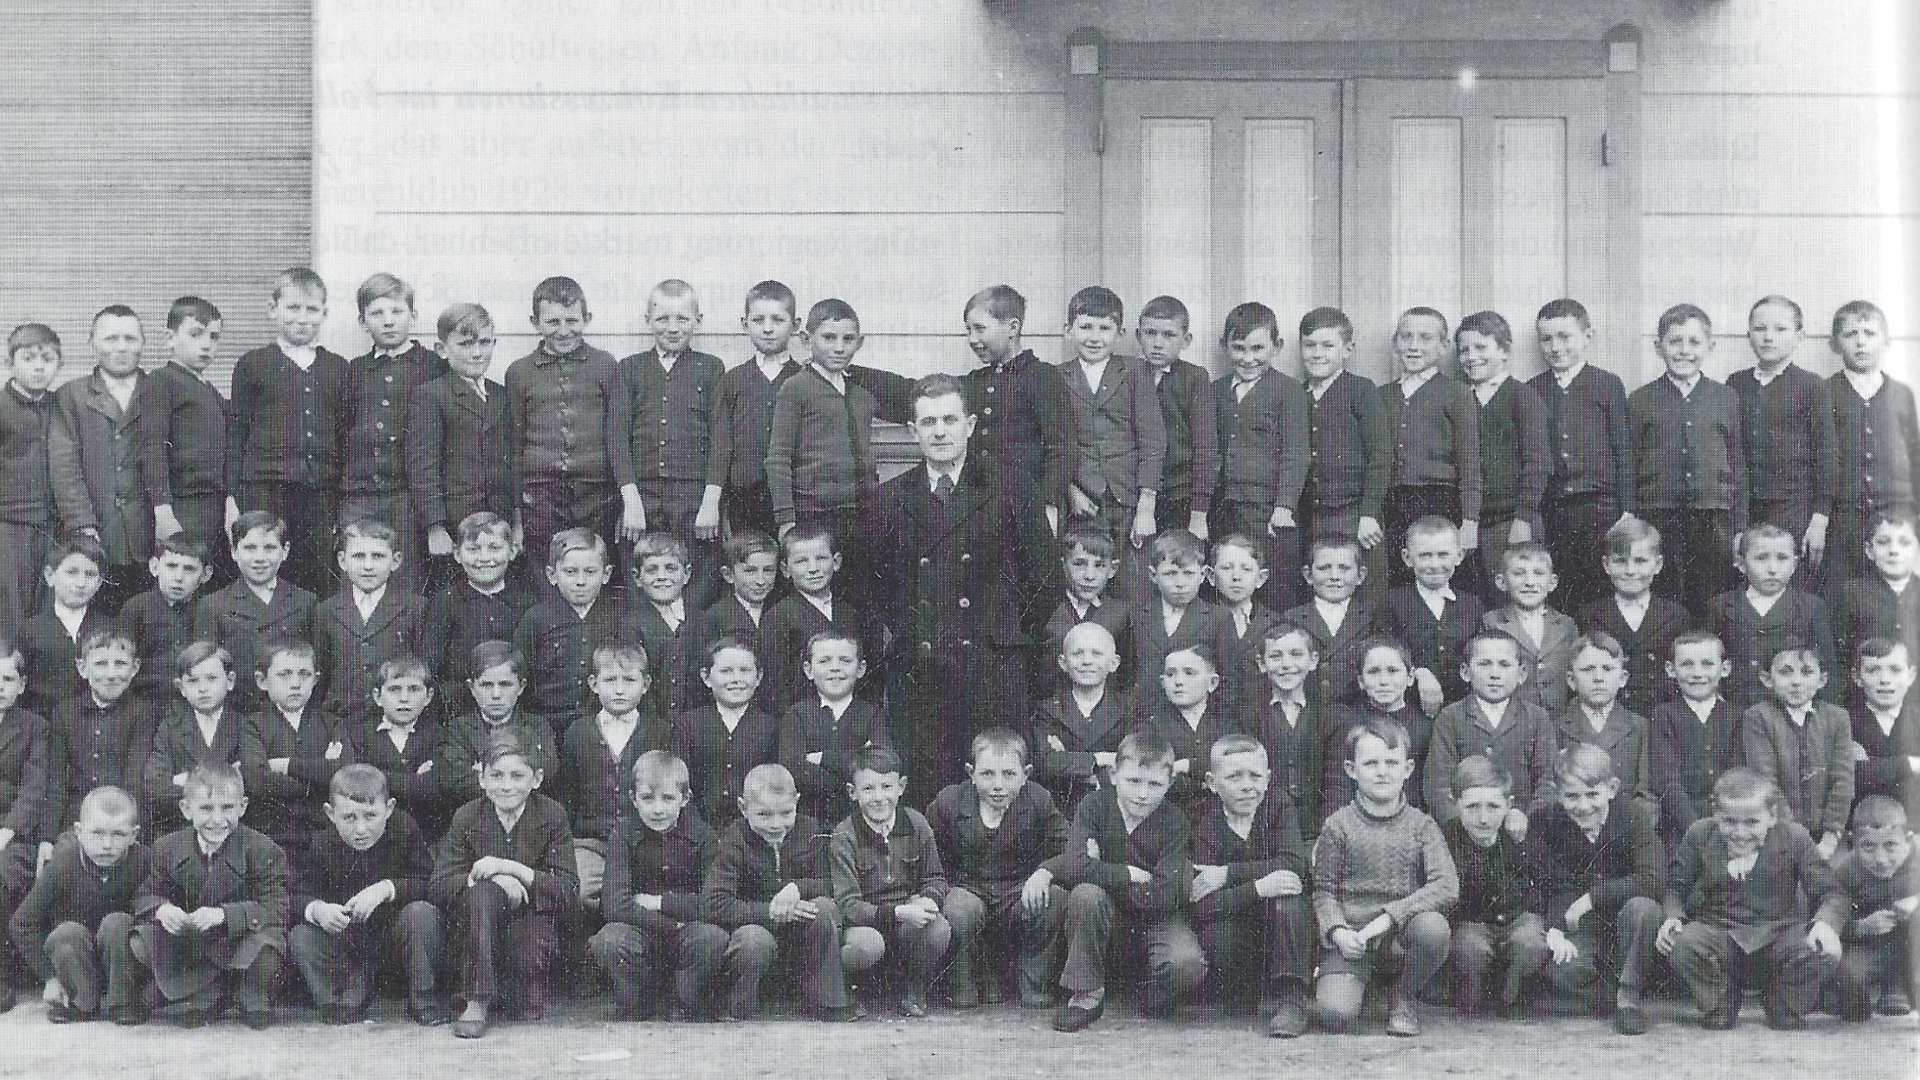 Bubenklasse Jahrgang 1929 mit Lehrer Josef Volkmar Senz, unterste Reihe, fünfter von rechts: Dr. Georg Wildmann, ein späterer Historiker der Donauschwaben. Foto: Archiv Arme Schulschwestern